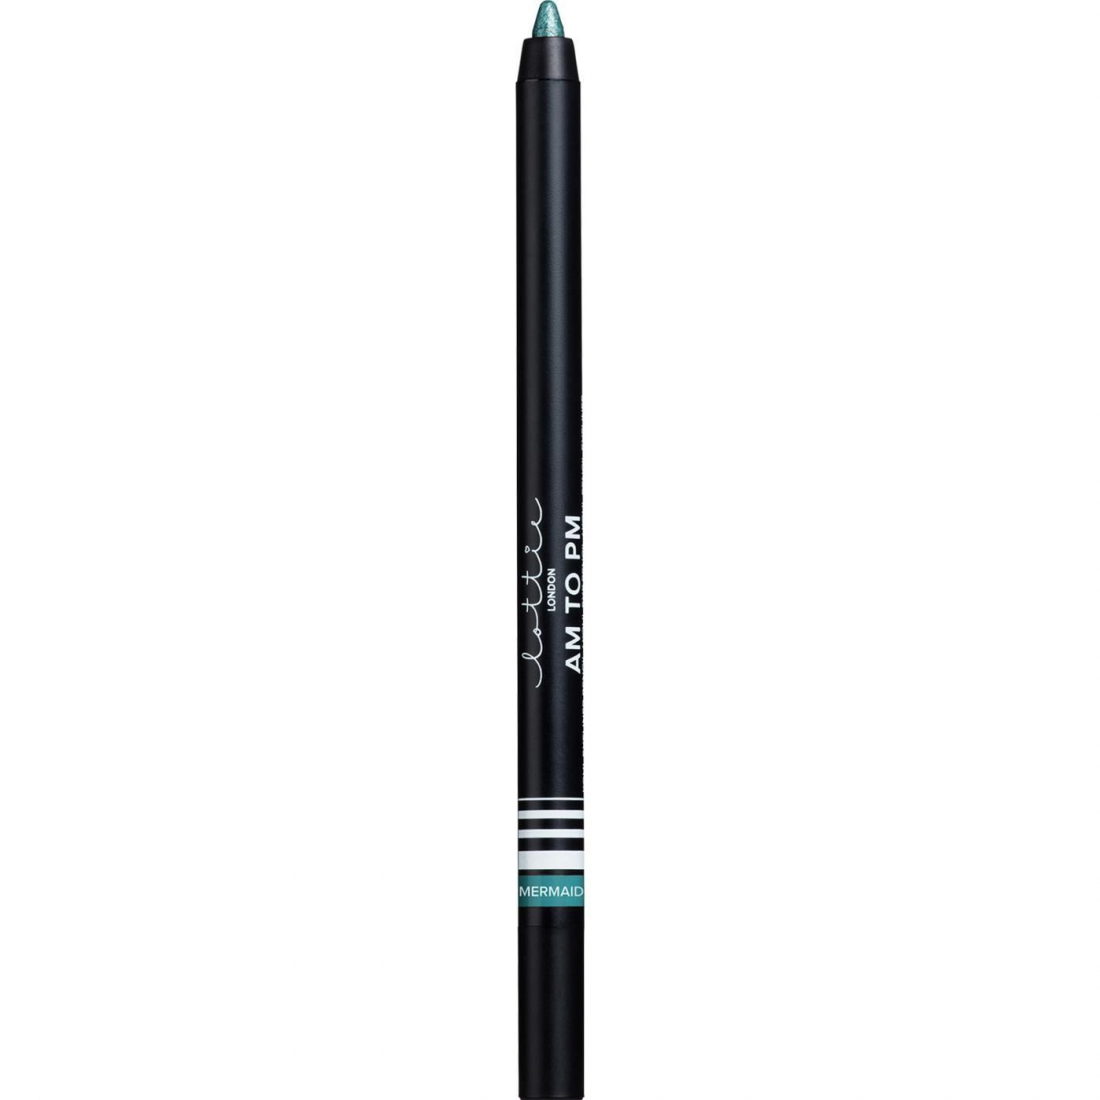 'Am To Pm' Eyeliner Pen - Mermaid 1.1 g